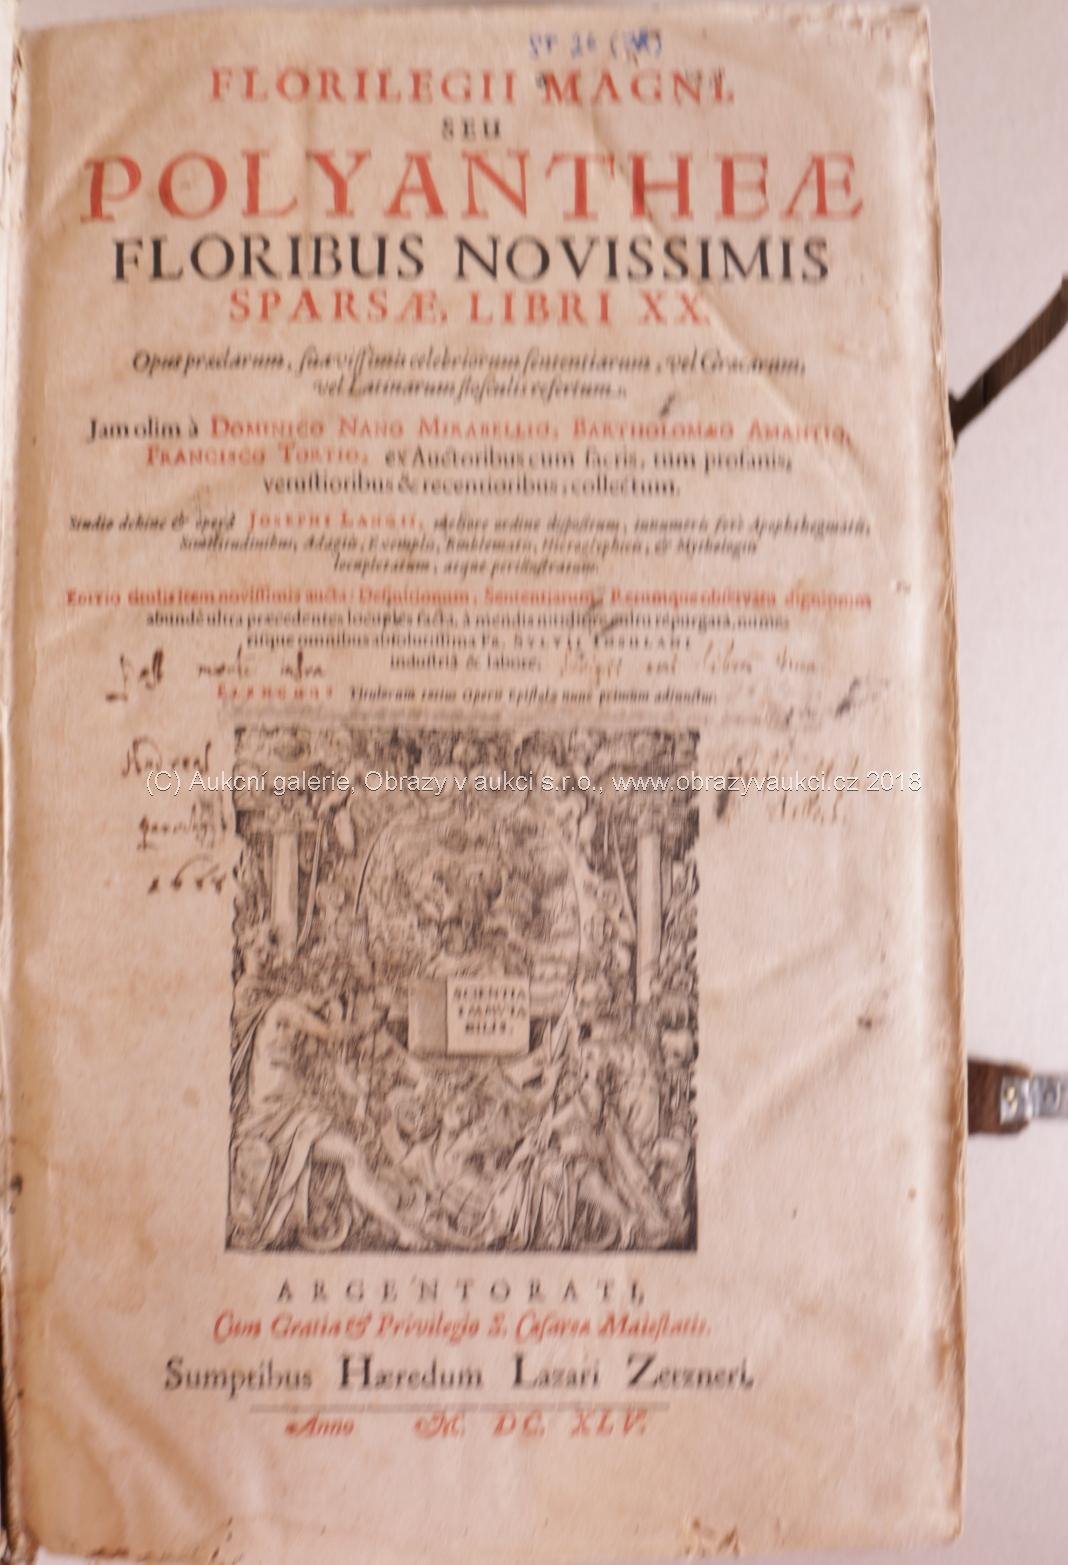 . - Florilegii Magni seu Polyanthenae floribus novissimis sparsae. libri XX. R. 1645